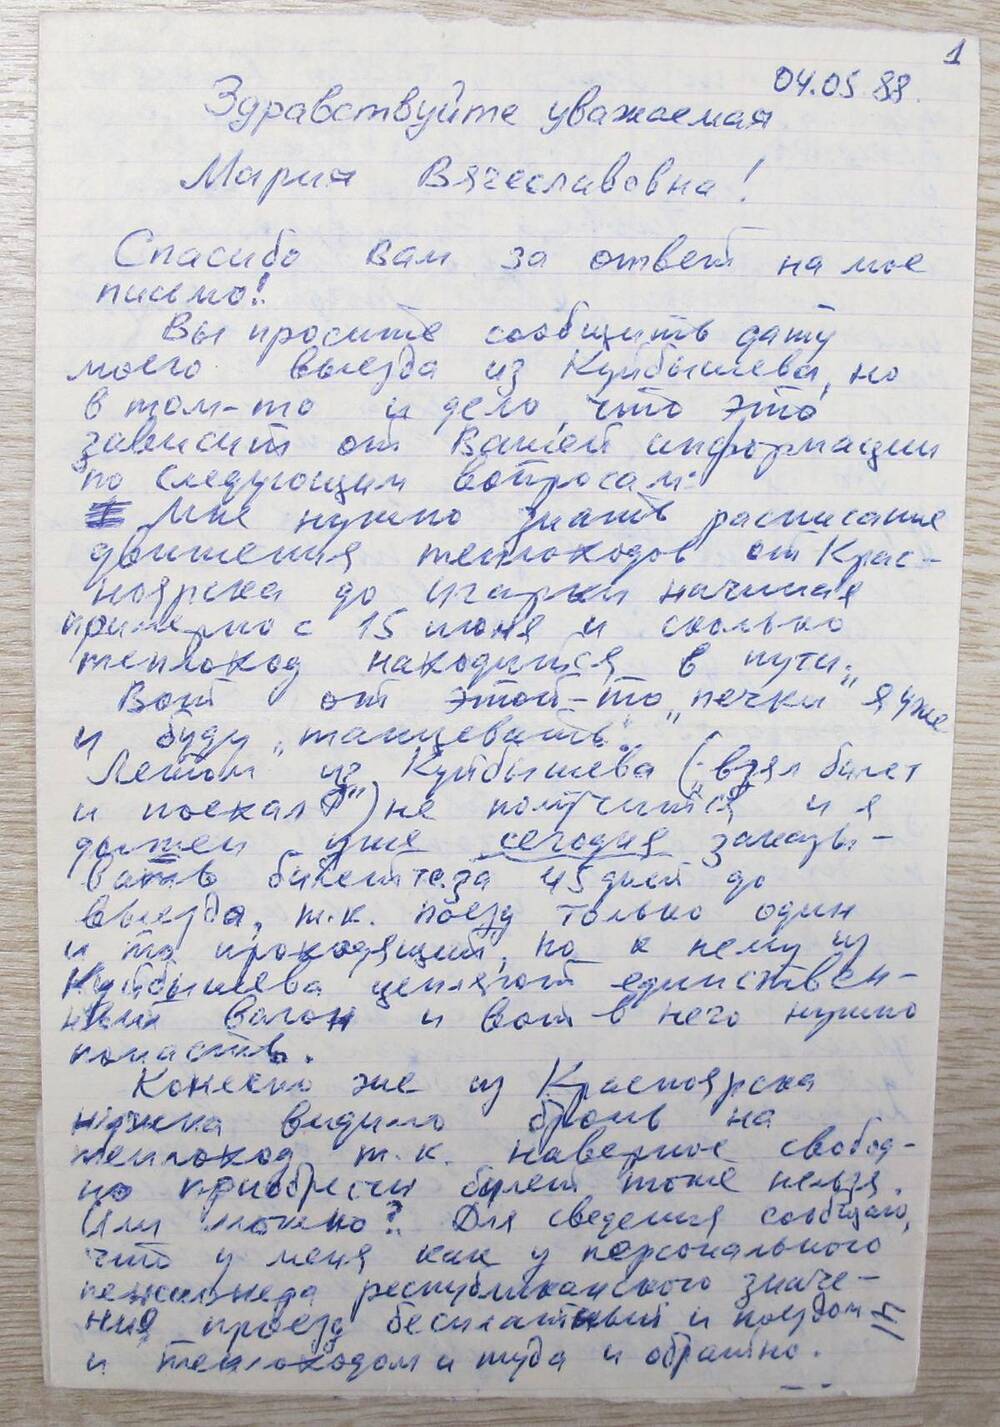 Письмо одного из авторов книги Мы из Игарки Иванова Бориса Николаевича Мишечкиной М. В.